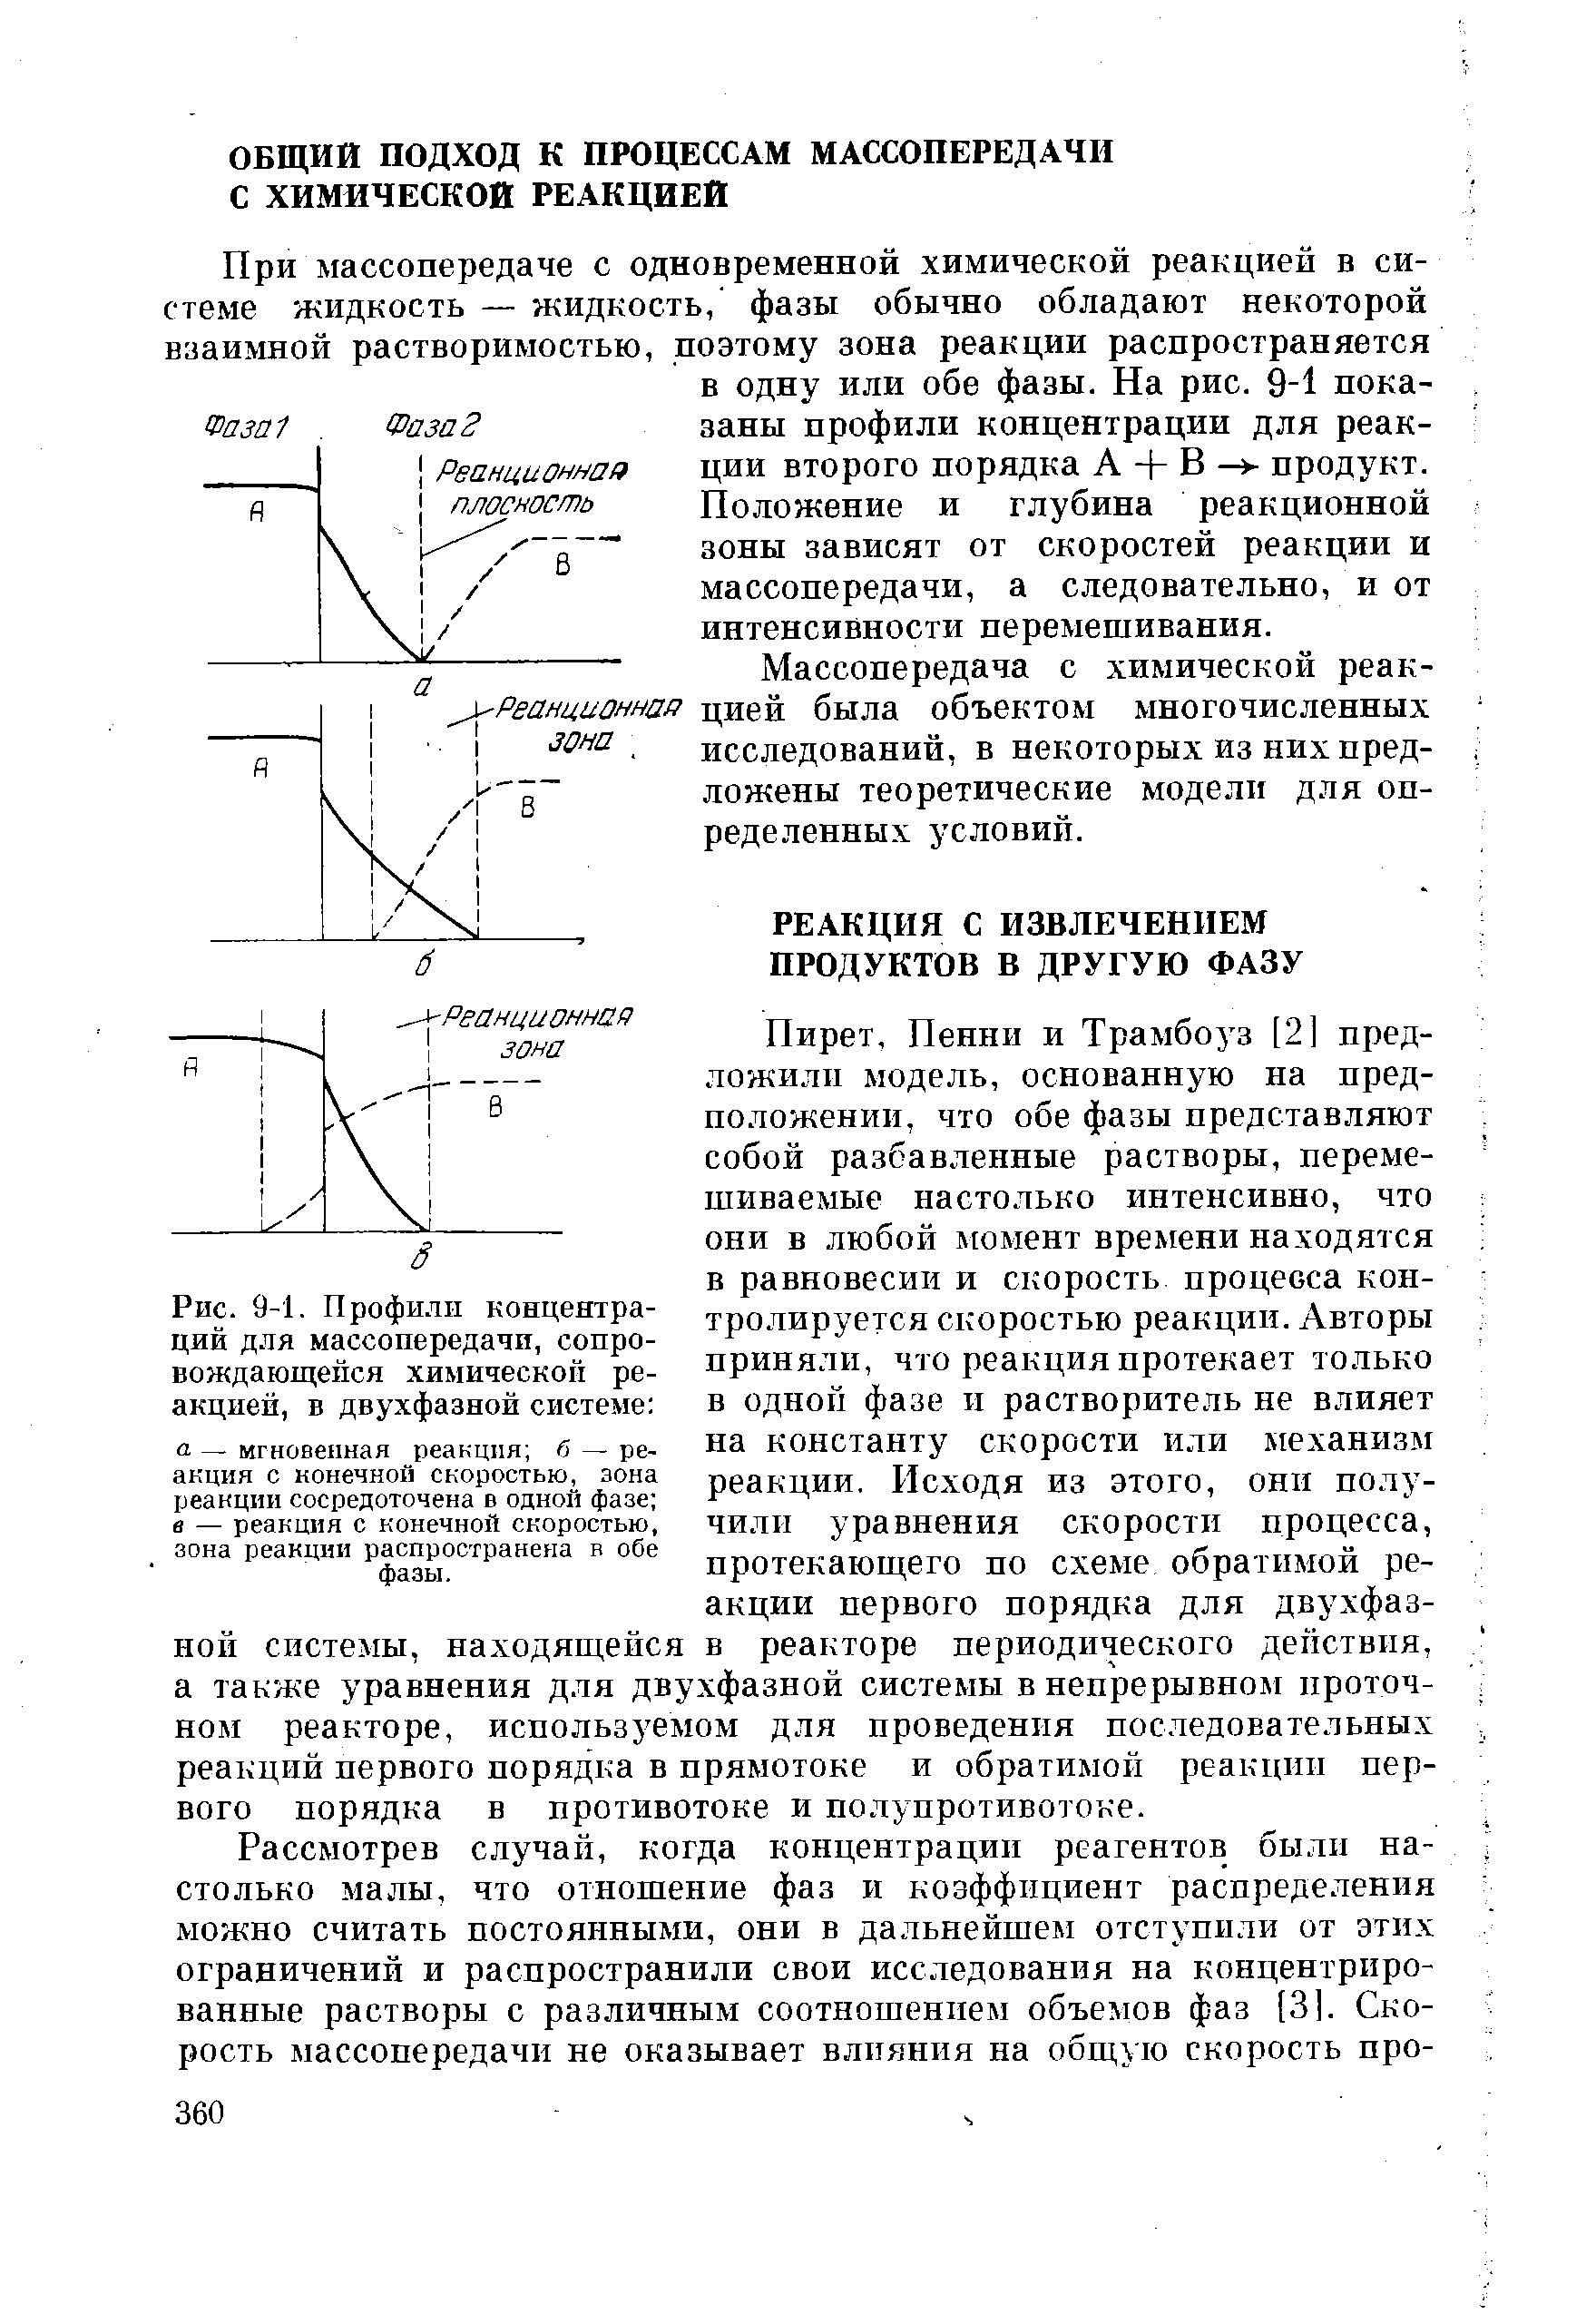 Массопередача с химической реак- Реанцианша цией была объектом многочисленных исследований, в некоторых из них предложены теоретические модели для определенных условий.